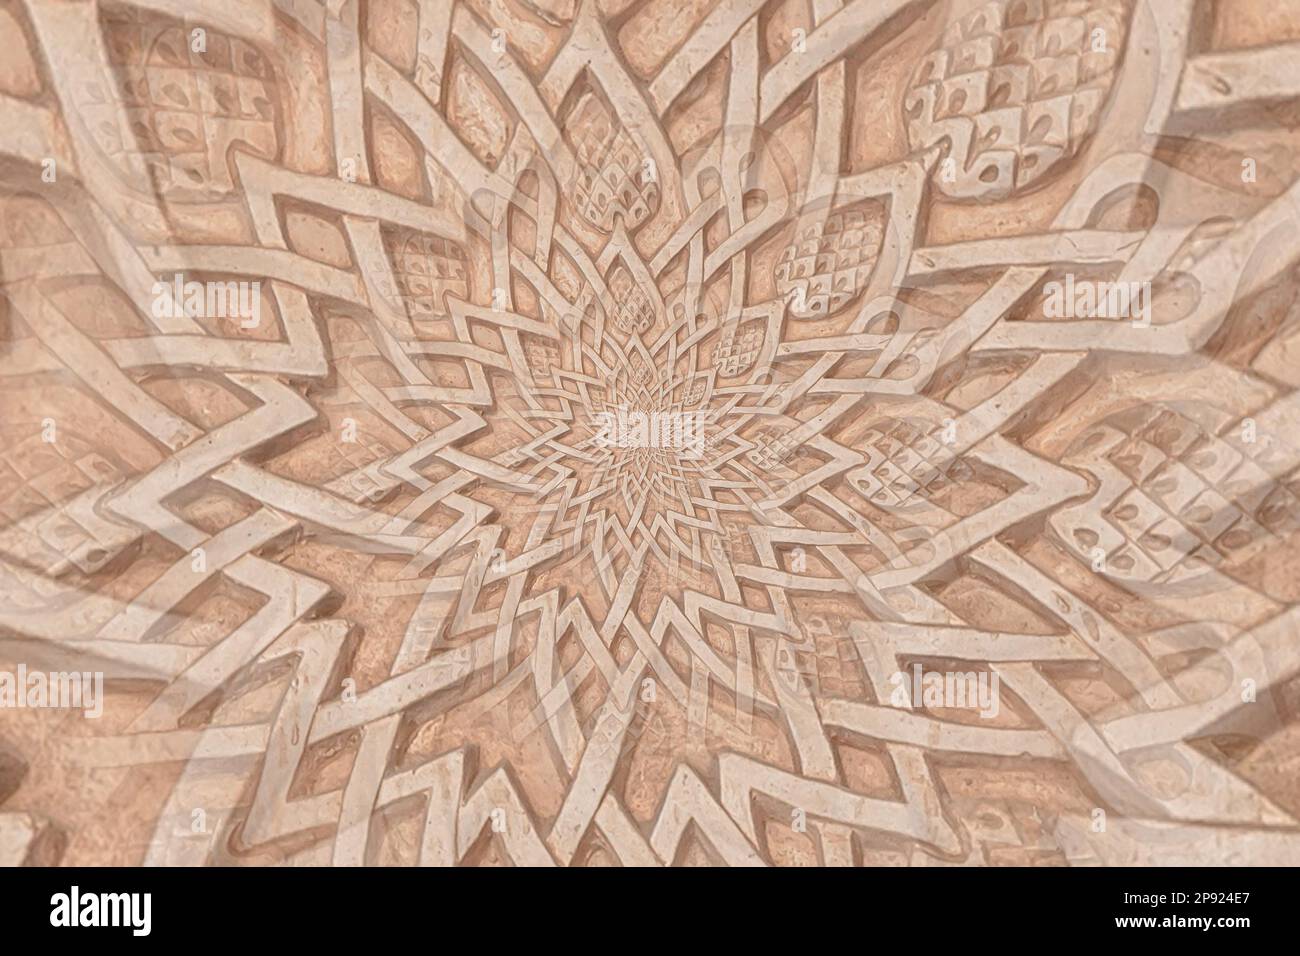 Contesto arabo che si rimandano alla cultura islamica. Design creato da un dettaglio architettonico del 13th ° secolo utilizzando effetto droste Foto Stock